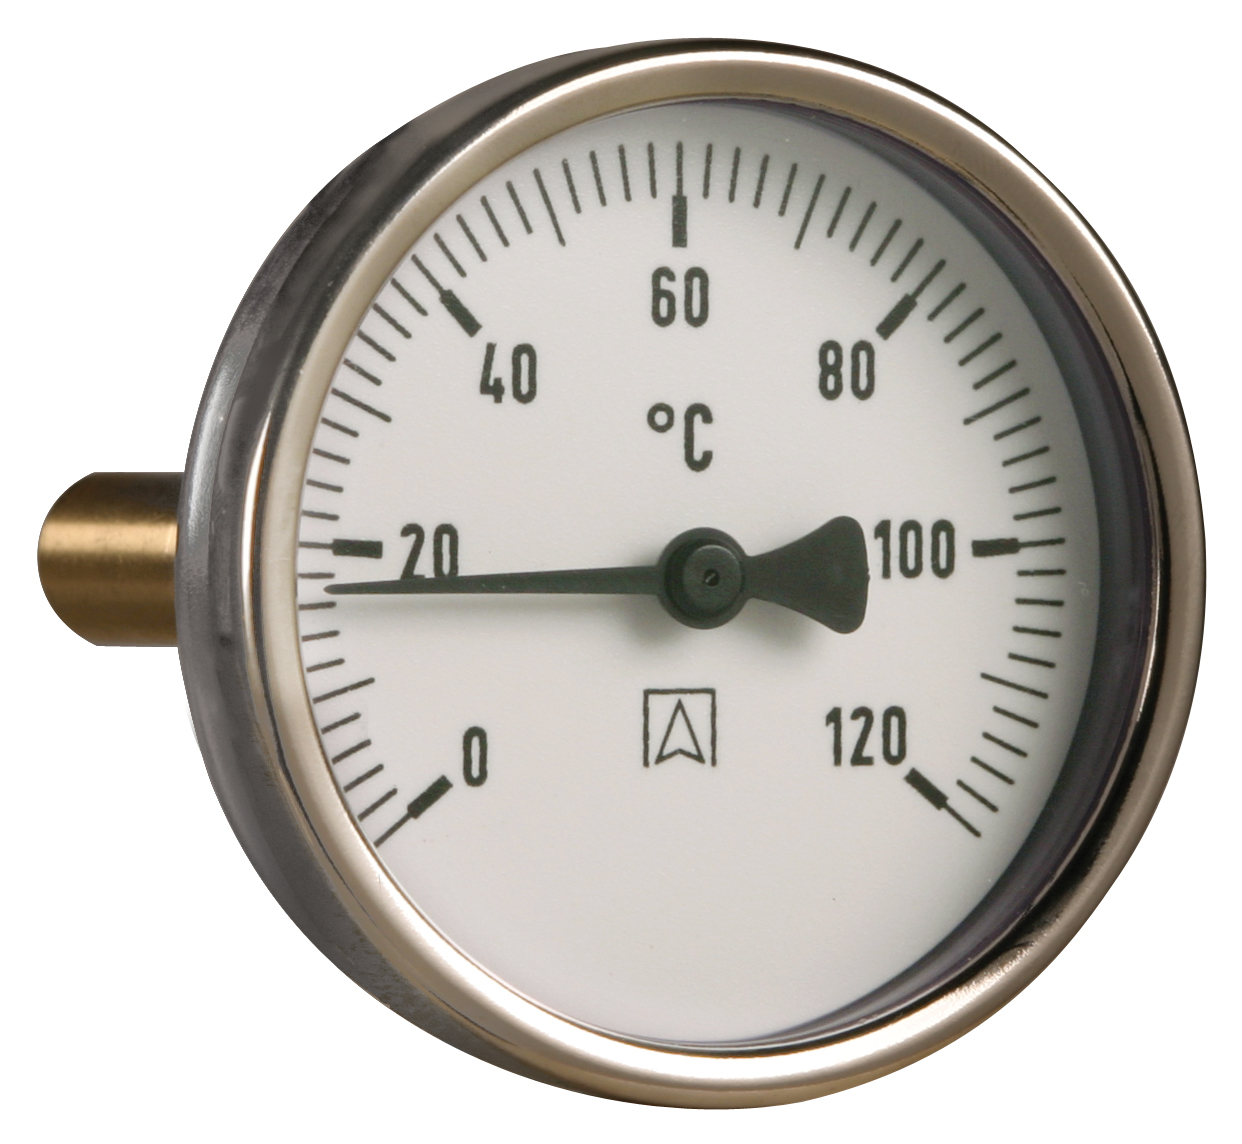 Termometr bimetaliczny BiTh 100, fi100 mm, -20÷60°C, L 40 mm, G1/2", ax, kl. 2